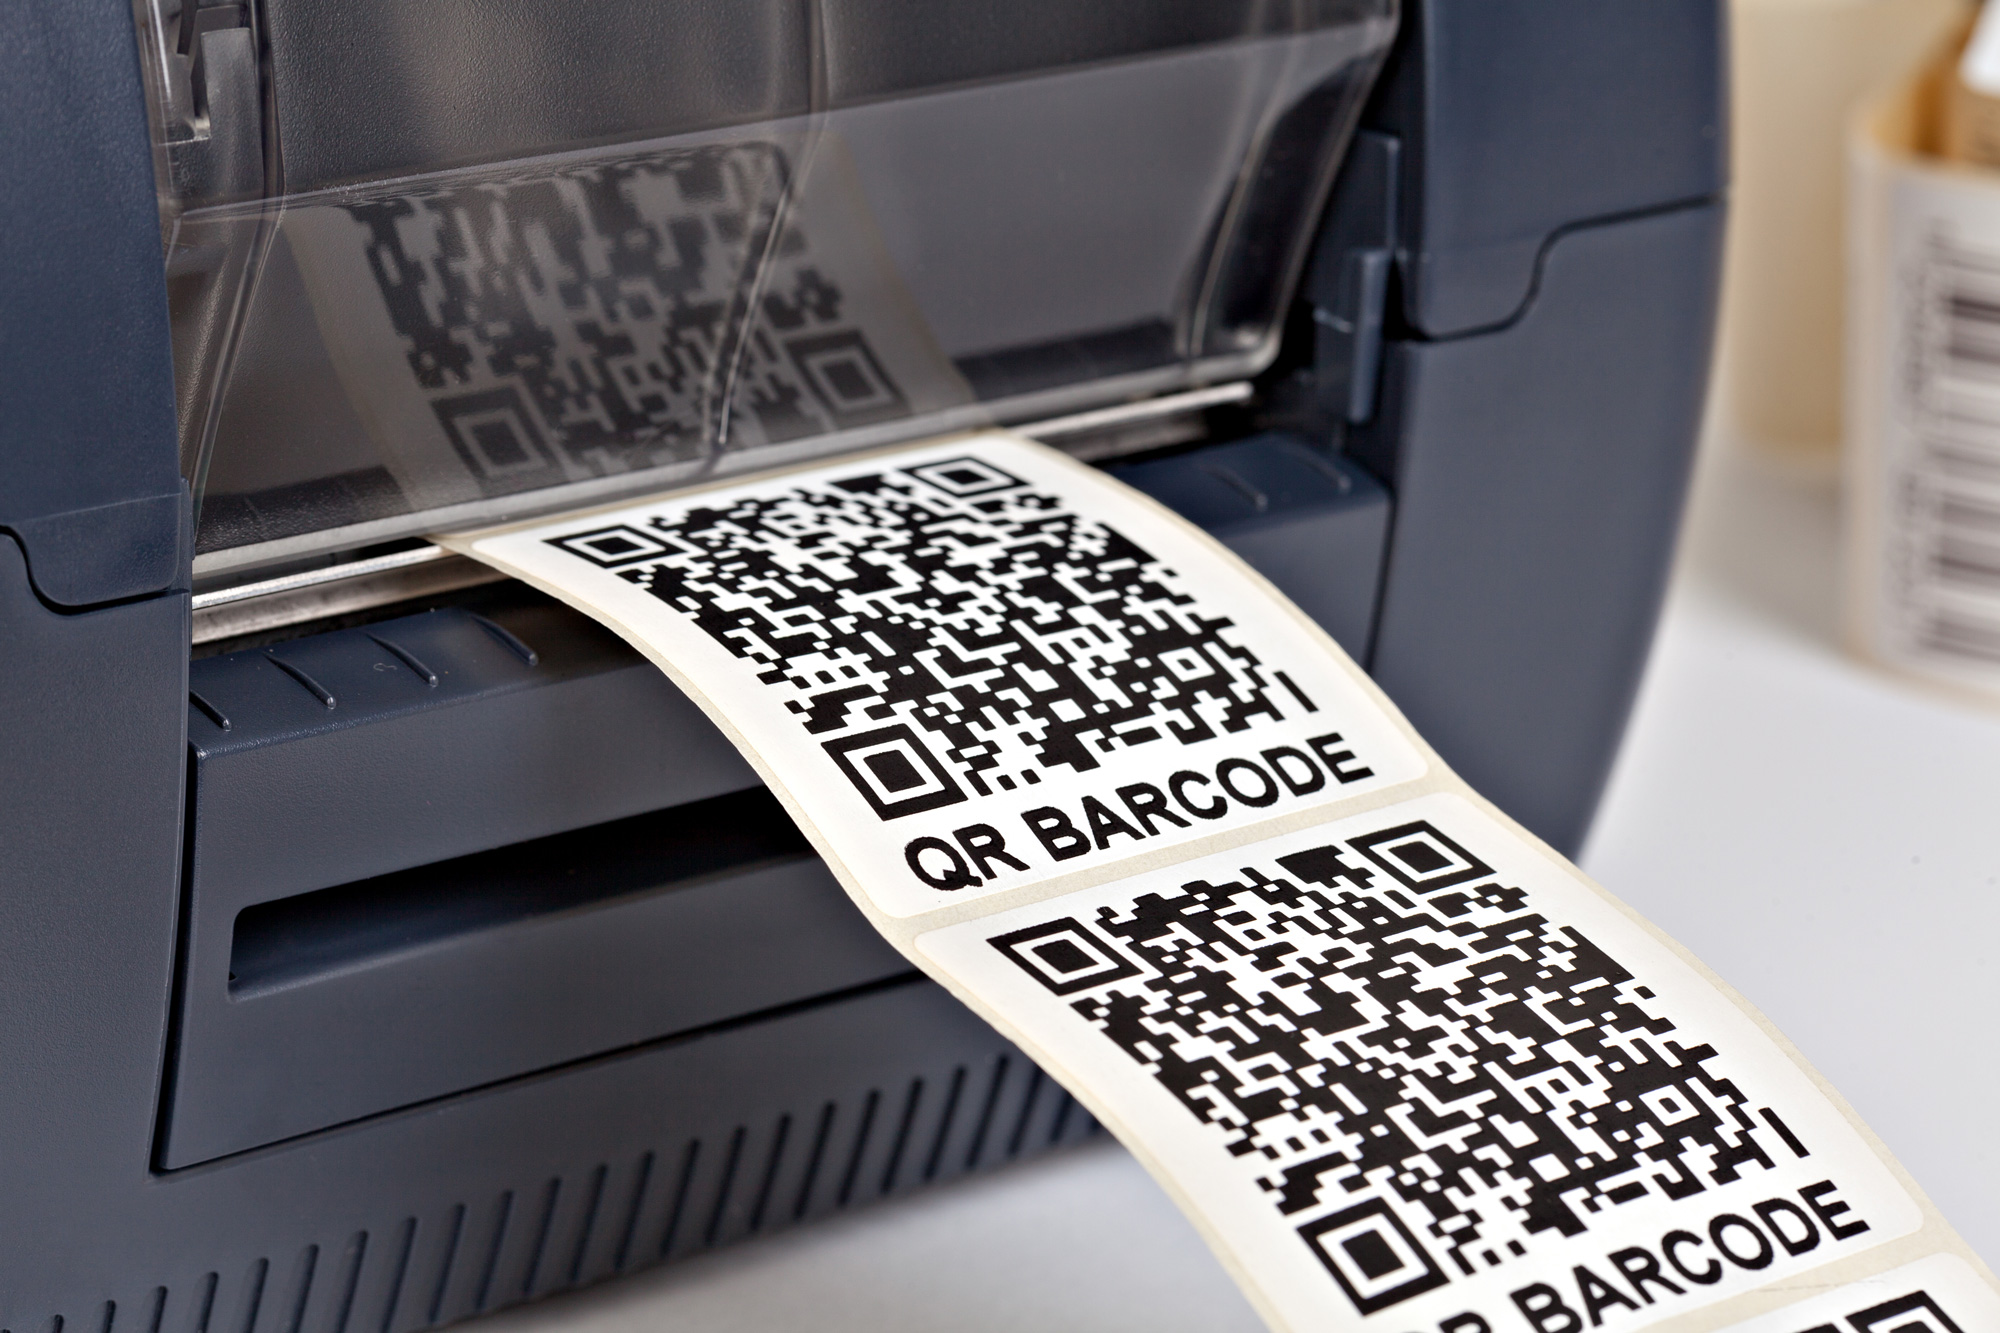 Imprimante thermique d'étiquettes adhésives